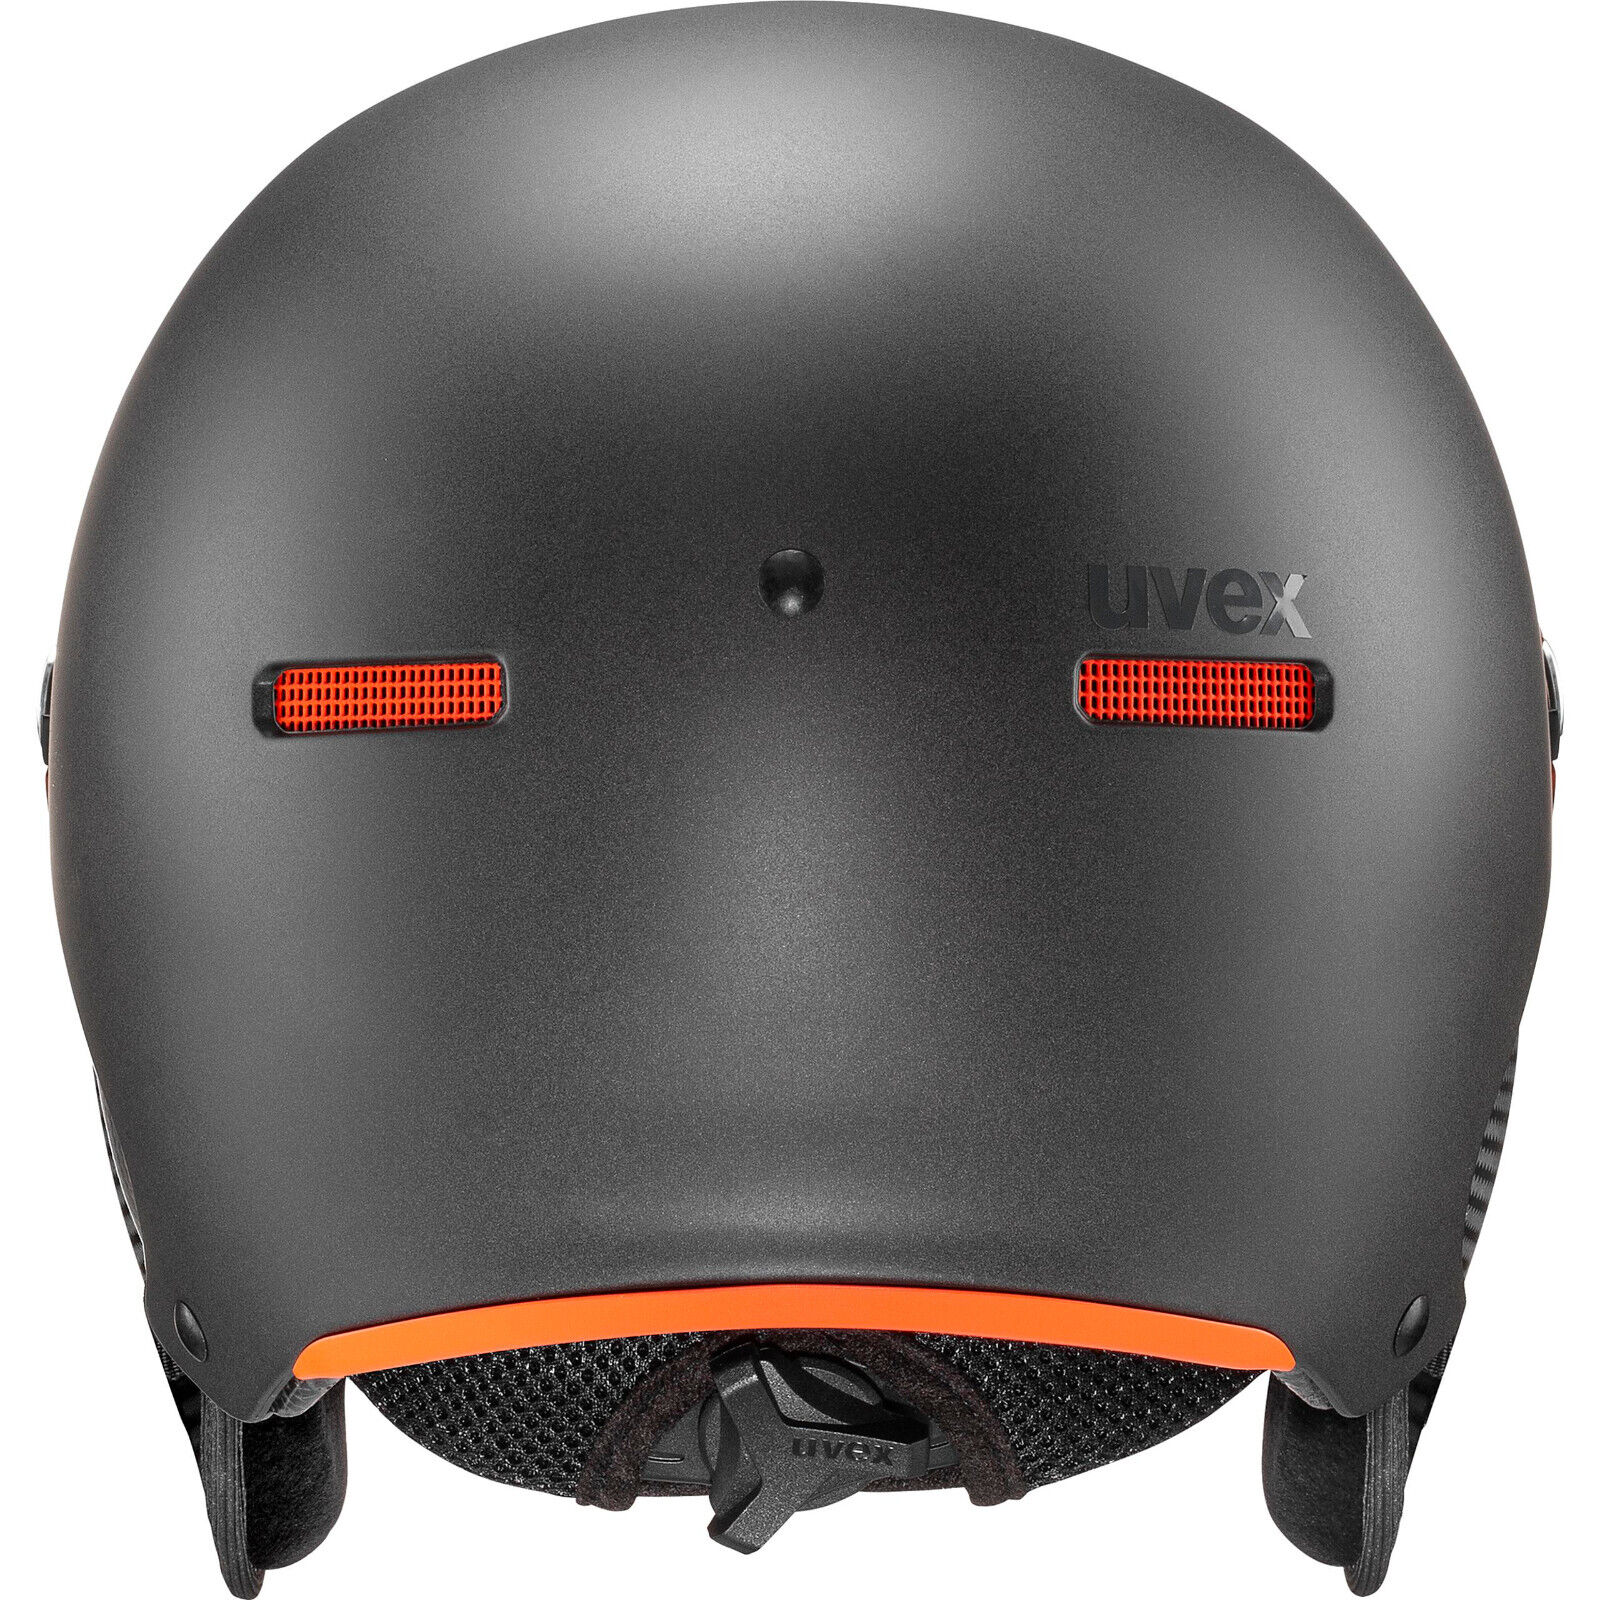 pigeon Lil victim Uvex Helmet 500 Visor Ski Helmet Visor Helmet Snowboard Helmet with Visor |  eBay